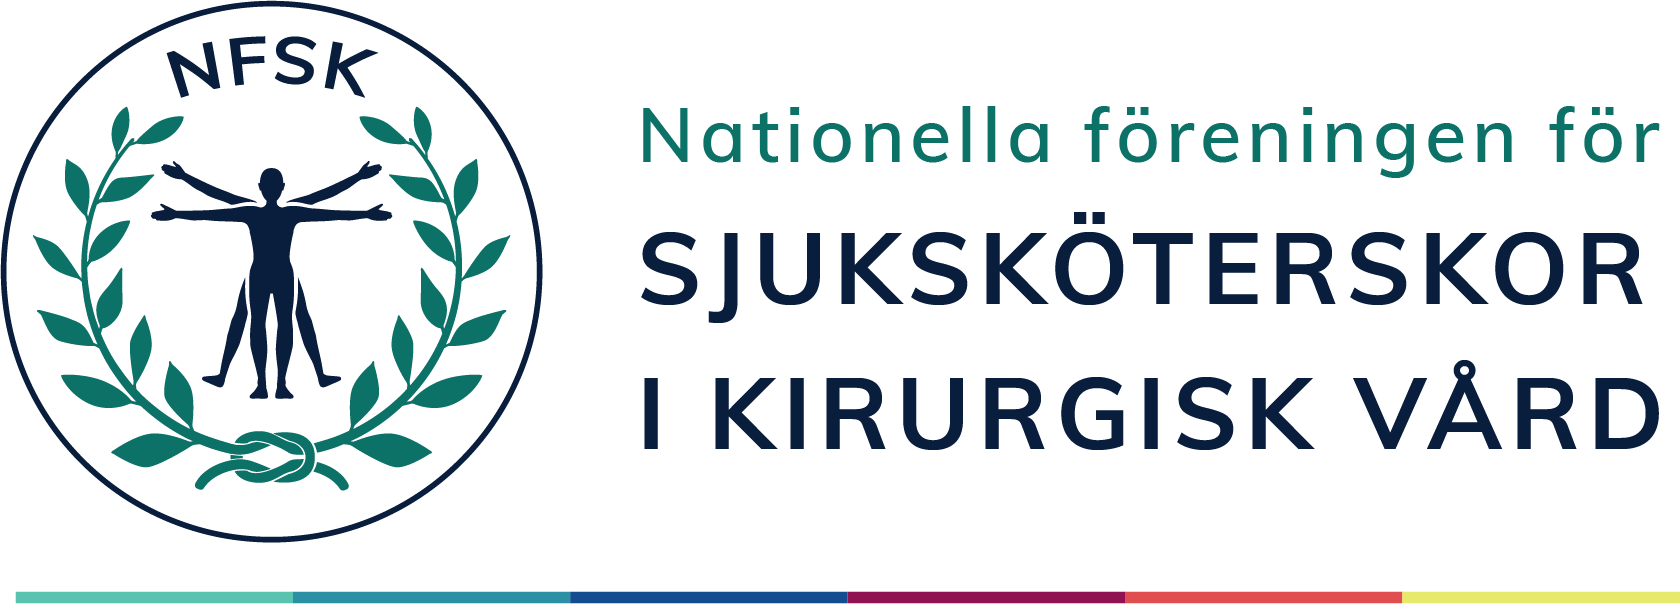 nfsk-logo-kjvy.png